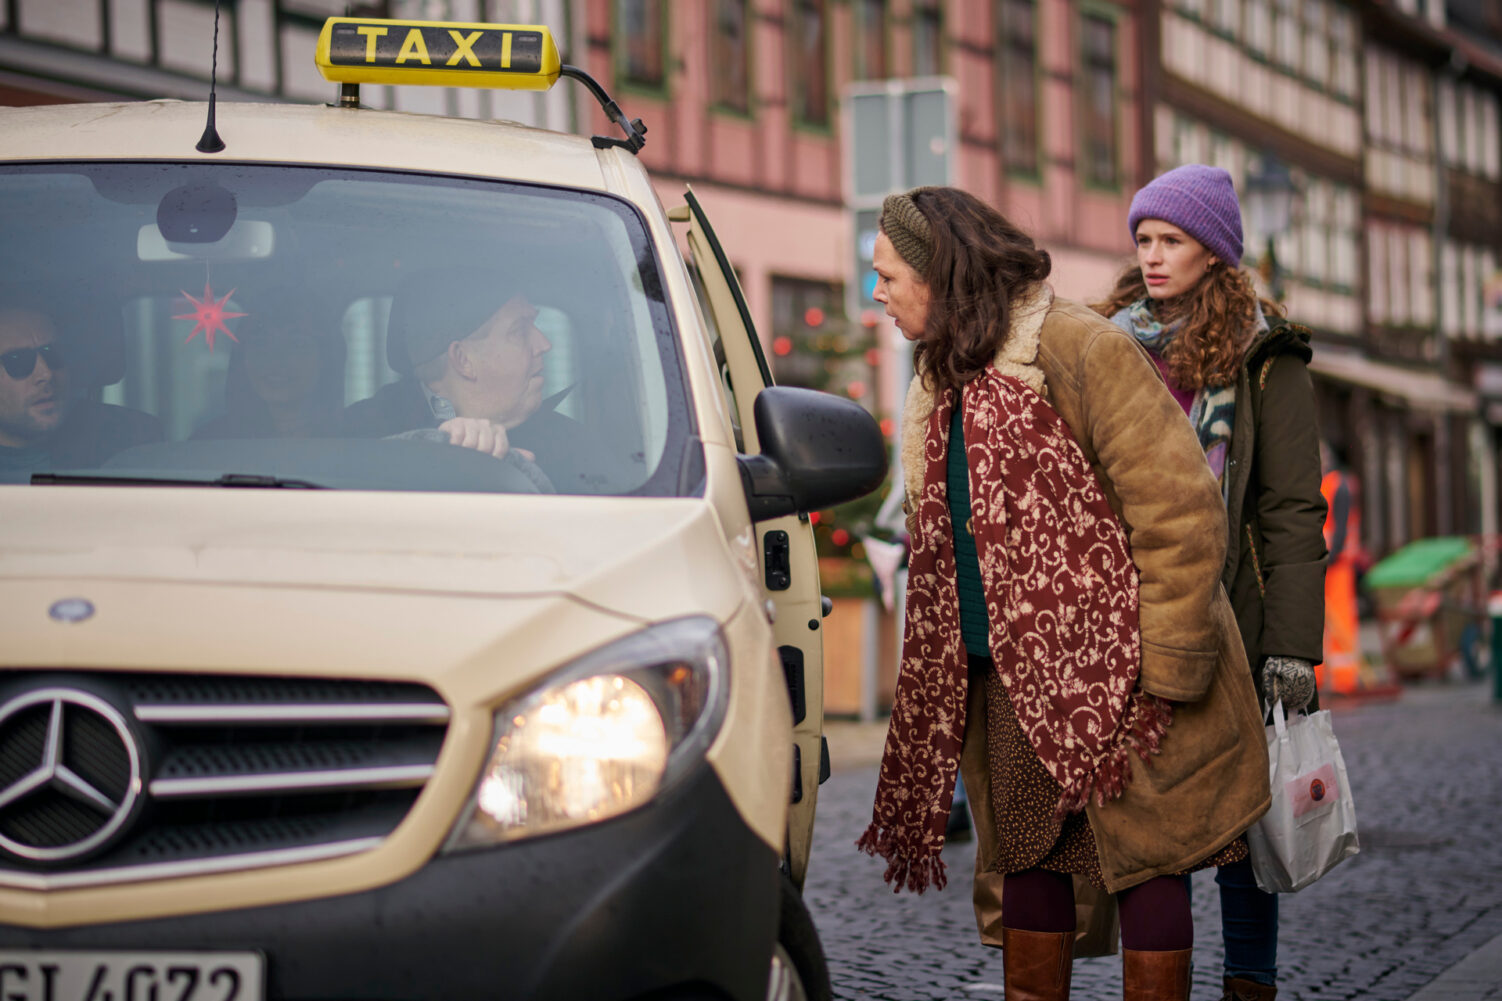 “Ein Taxi zur Bescherung”: ZDF, 20.15 Uhr